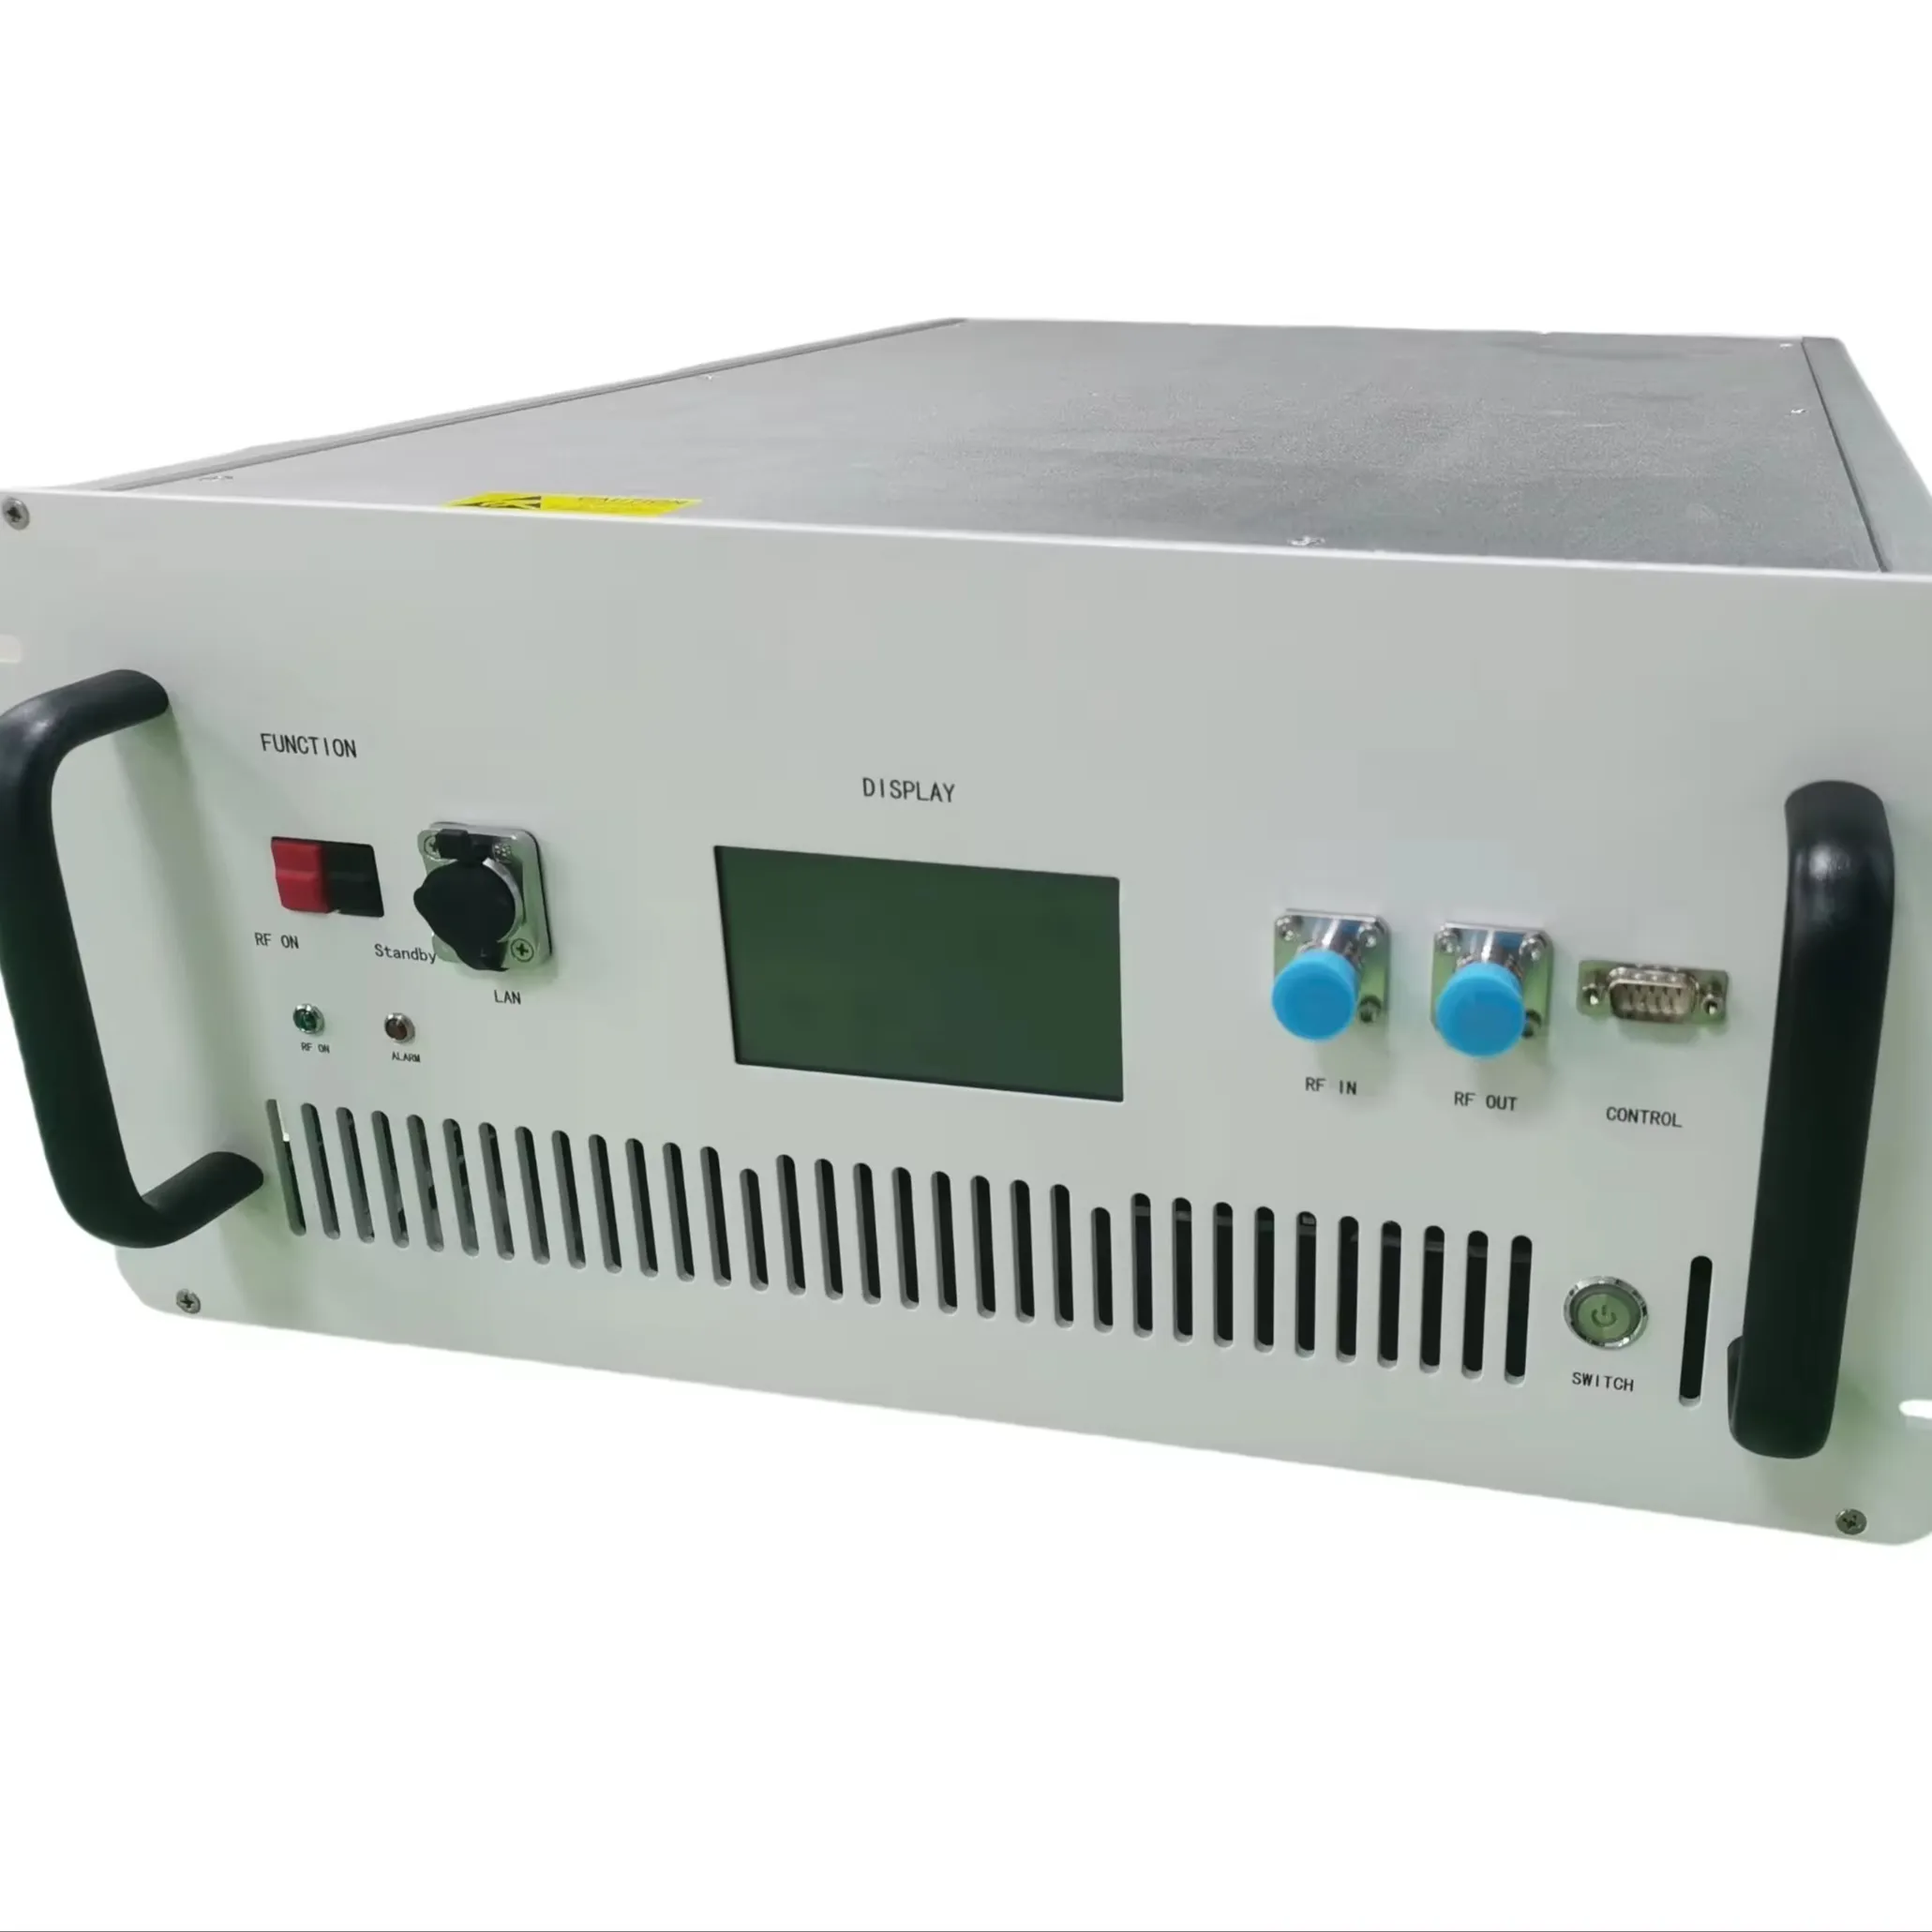 핫 세일 1000-6000 MHz 40W 초광대역 전자전에서 전력 증폭을 제공하는 고출력 RF 앰프 박스